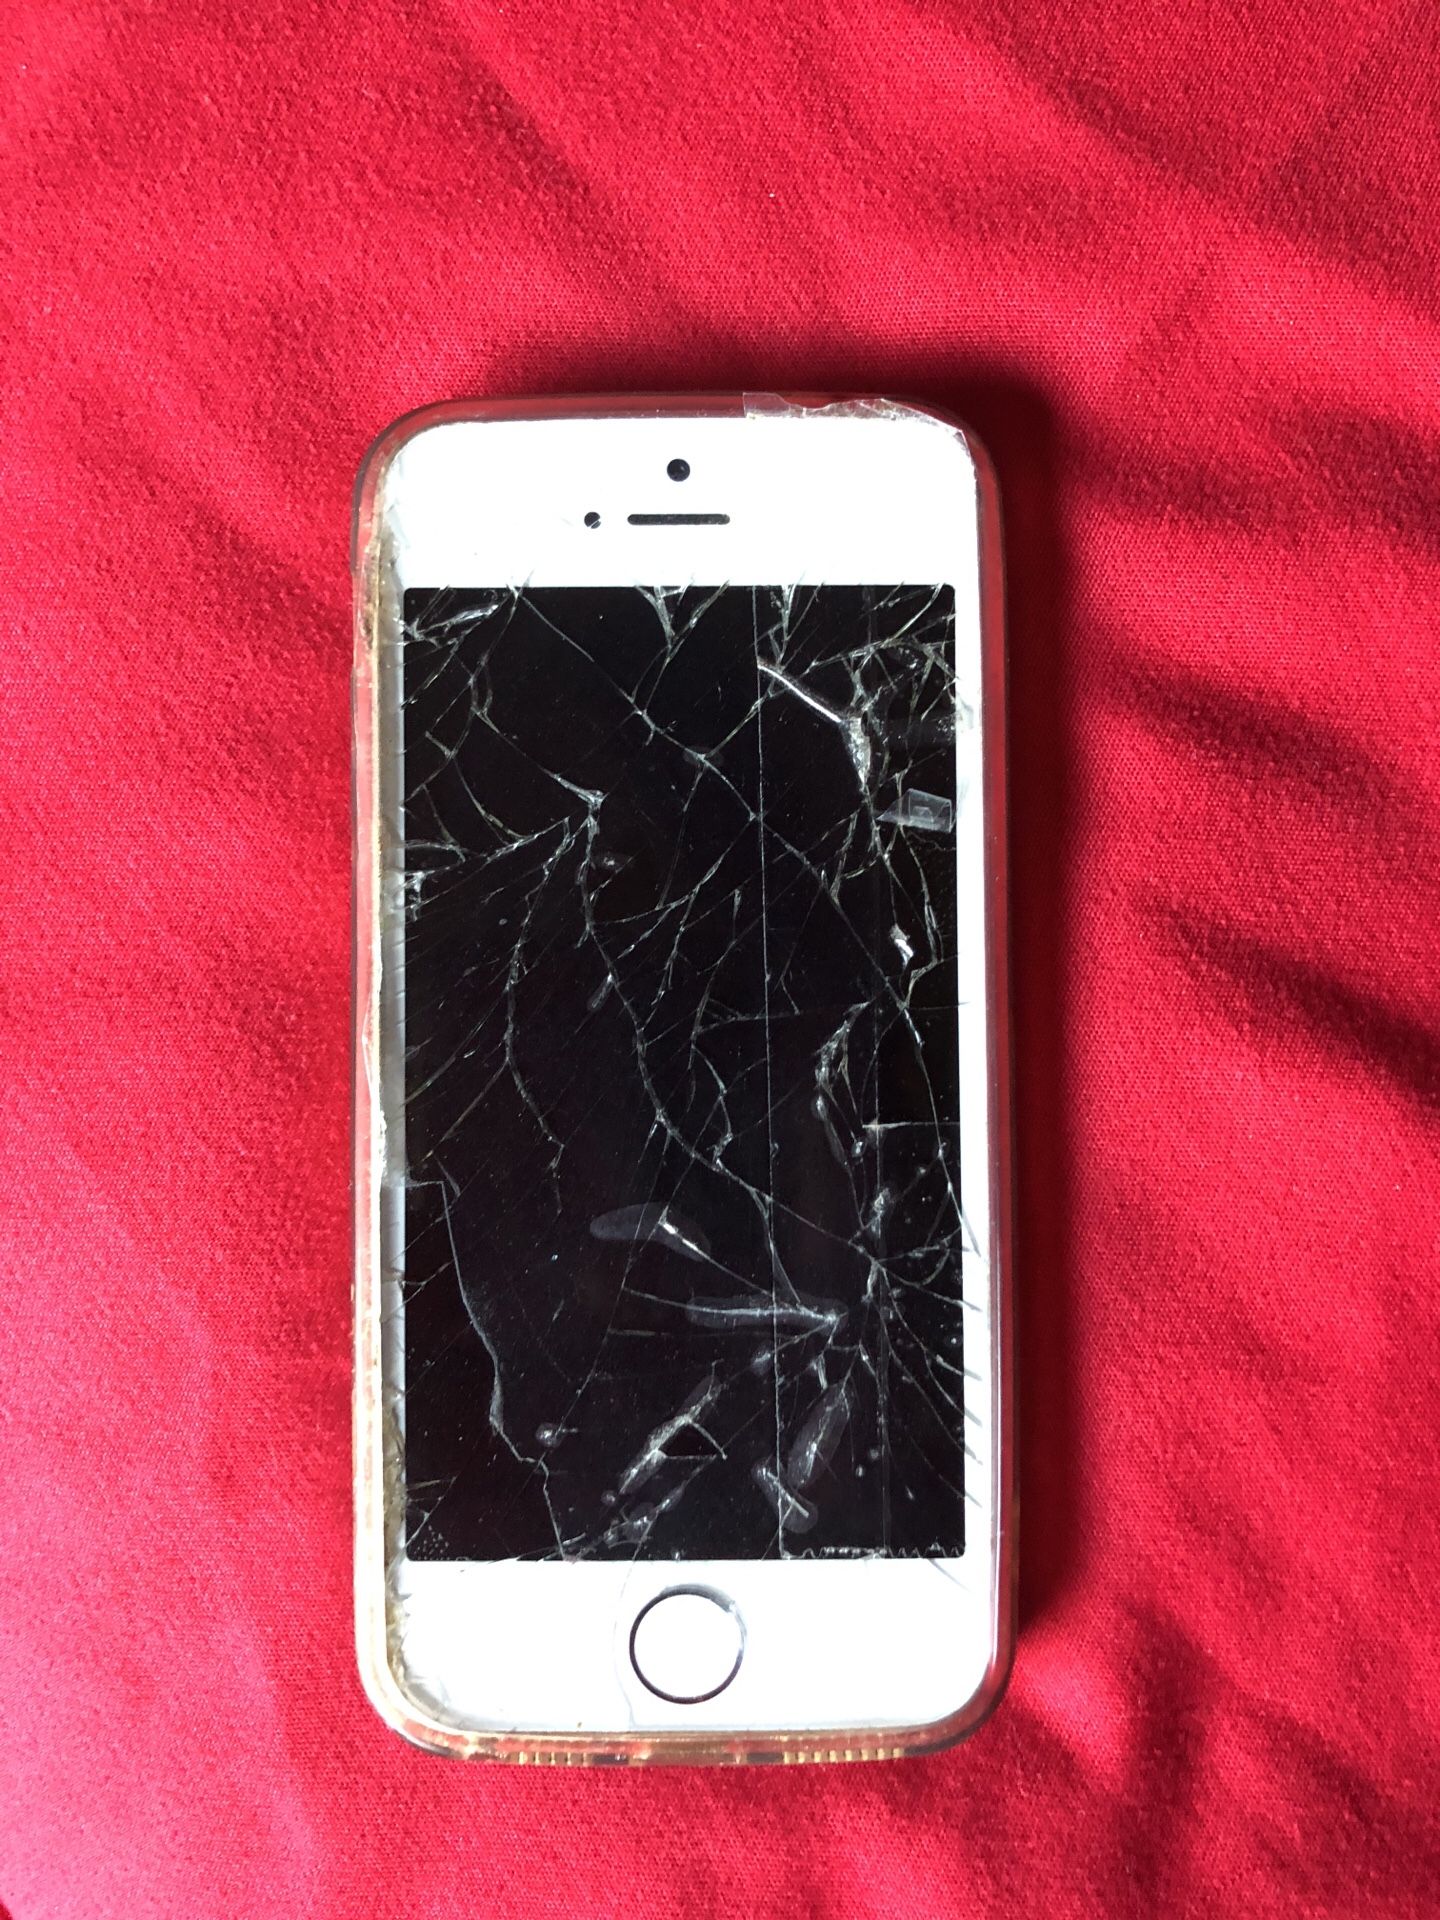 iPhone 5 broken screen works fine unlocked